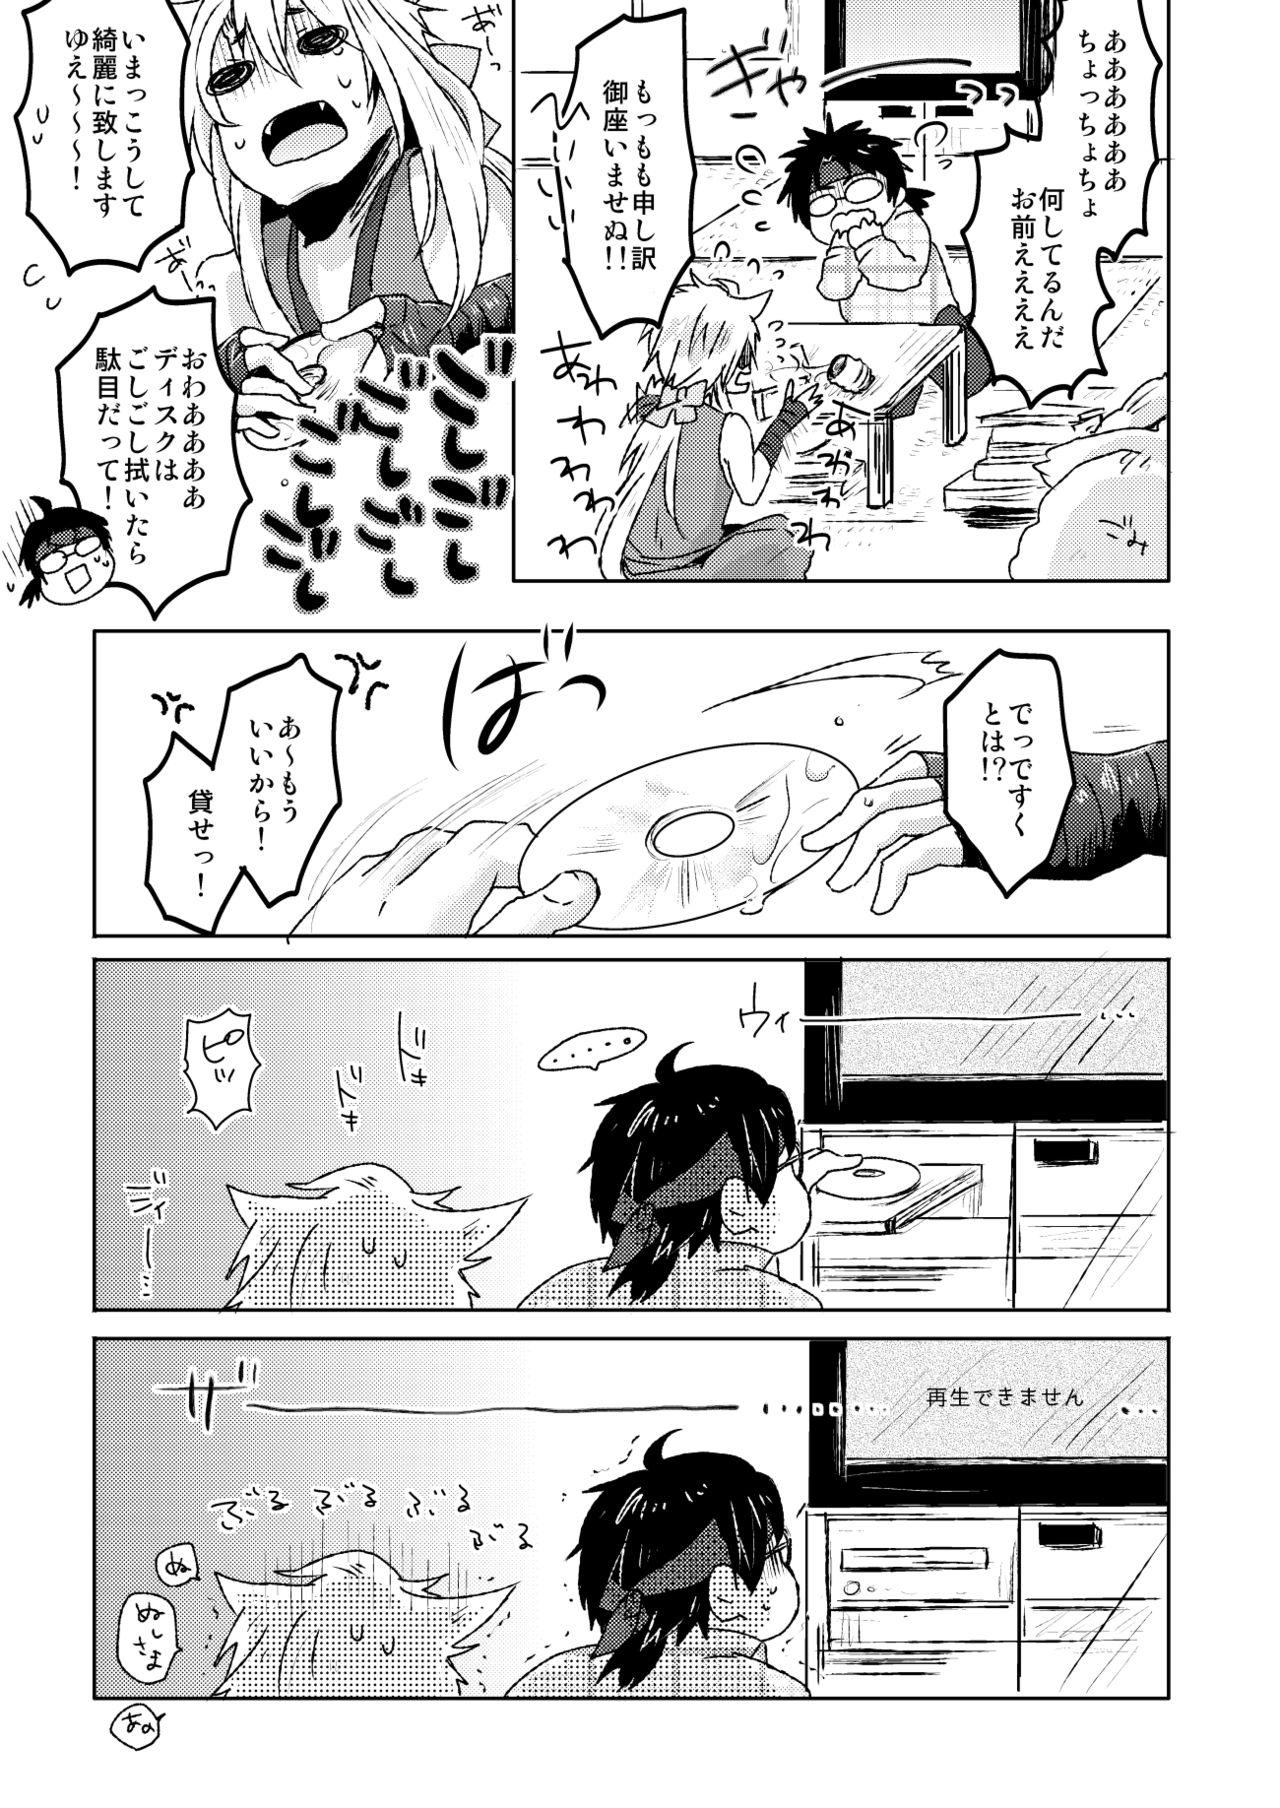 Pelada 愛狐遊戯 - Touken ranbu Toys - Page 7